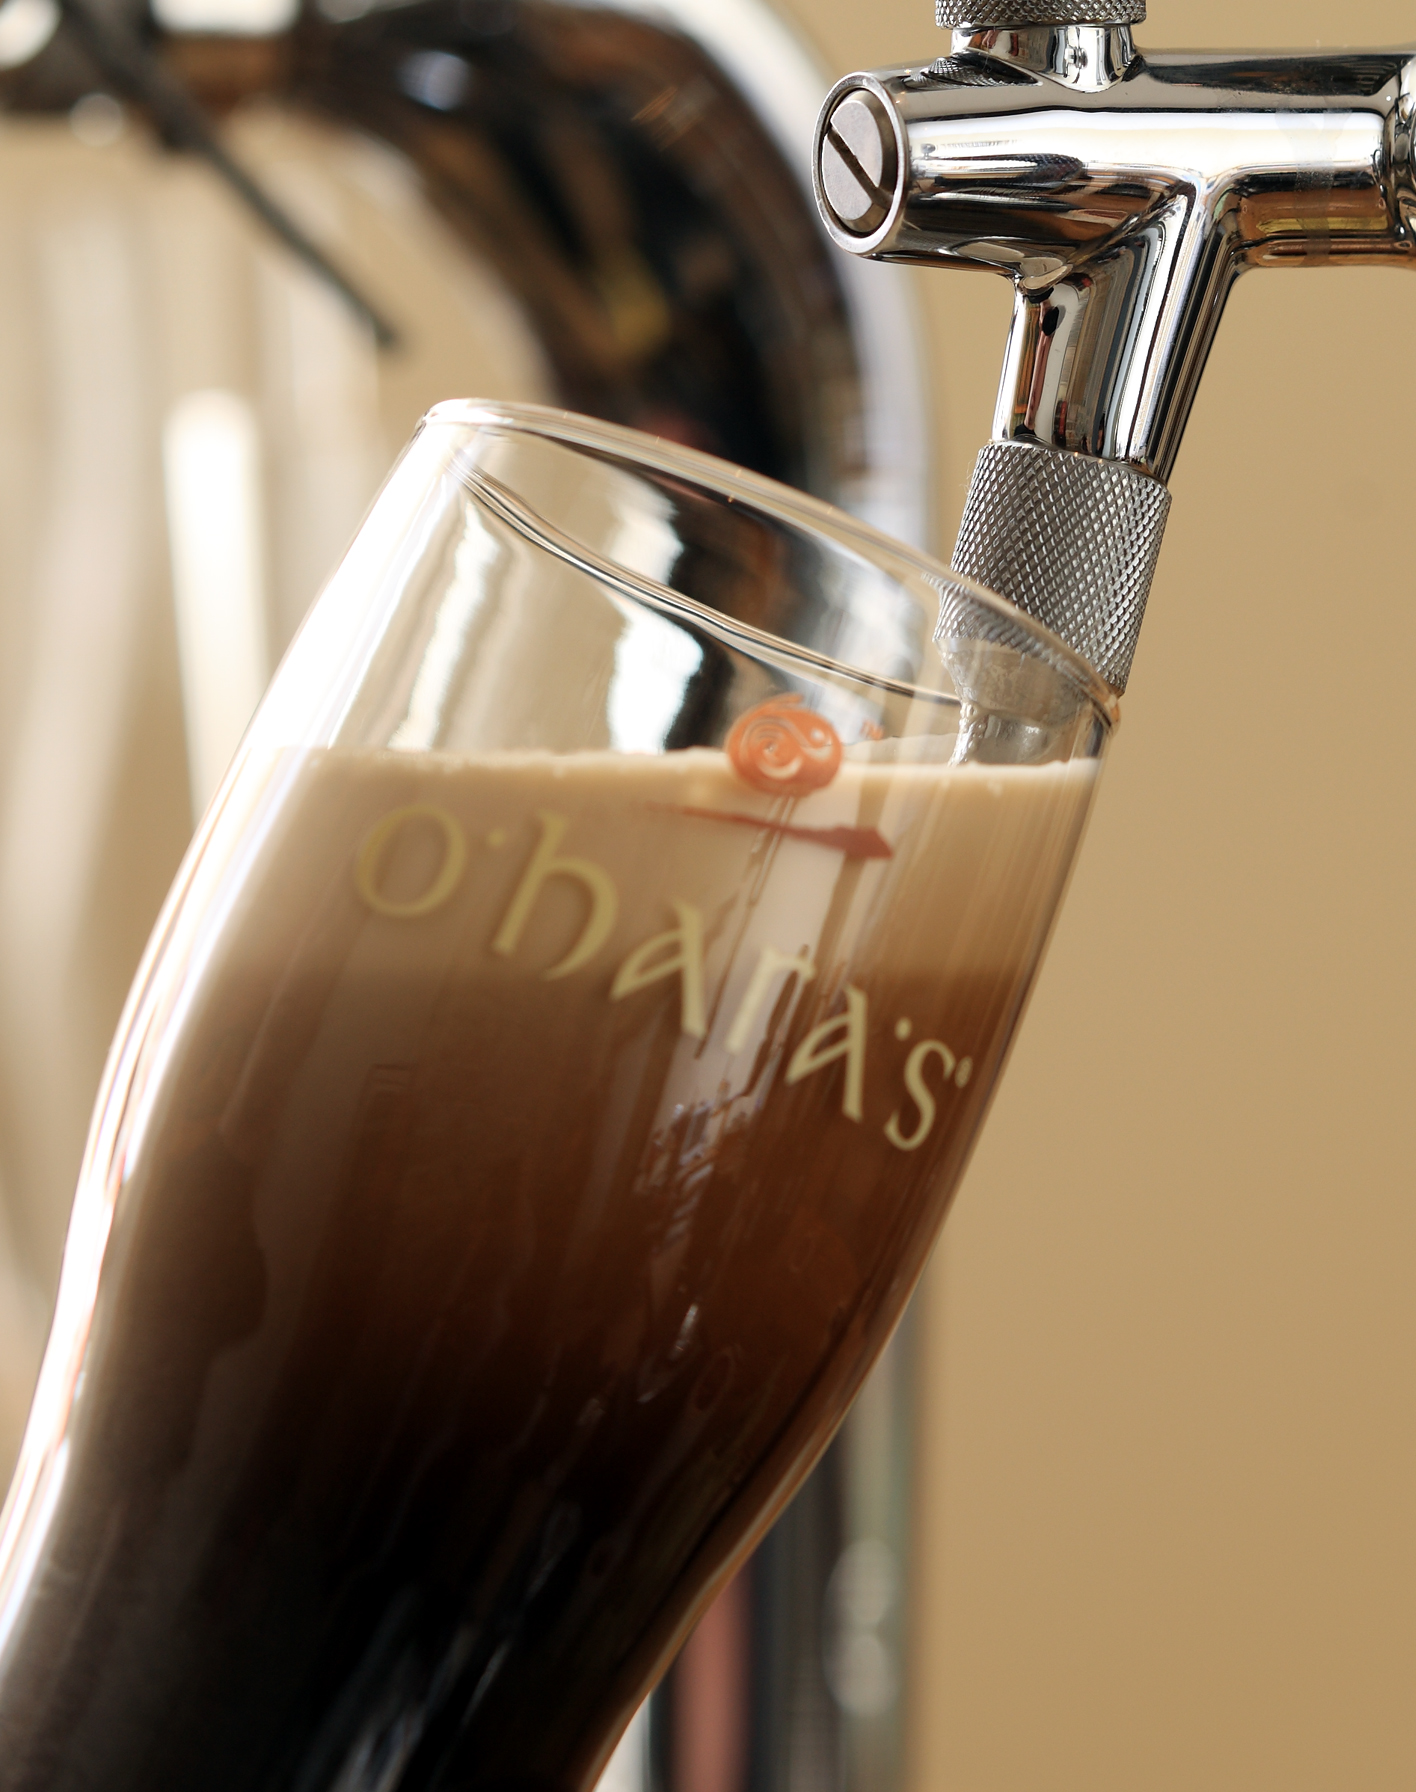 O’Hara’s: un sorso della vera birra irlandese ora anche in Italia